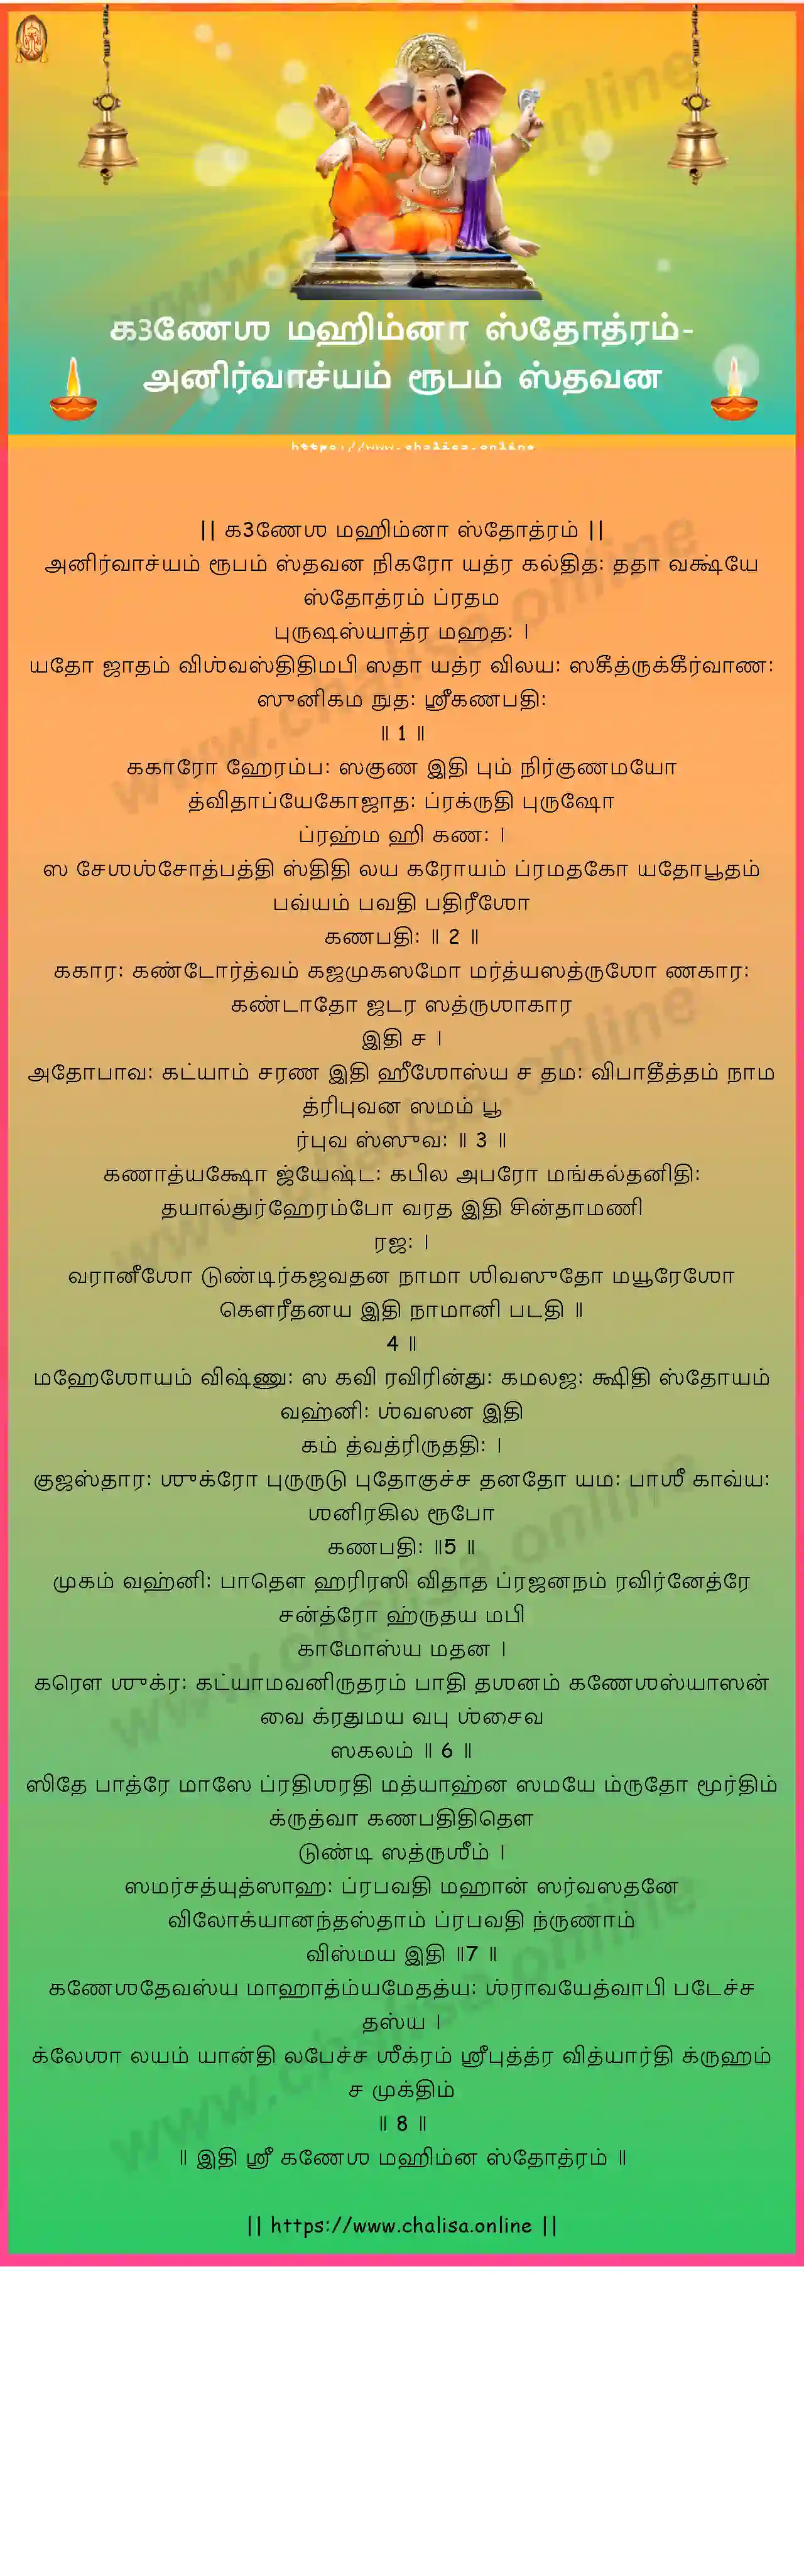 anirvachyam-rupam-ganesha-mahimna-stotram-tamil-tamil-lyrics-download